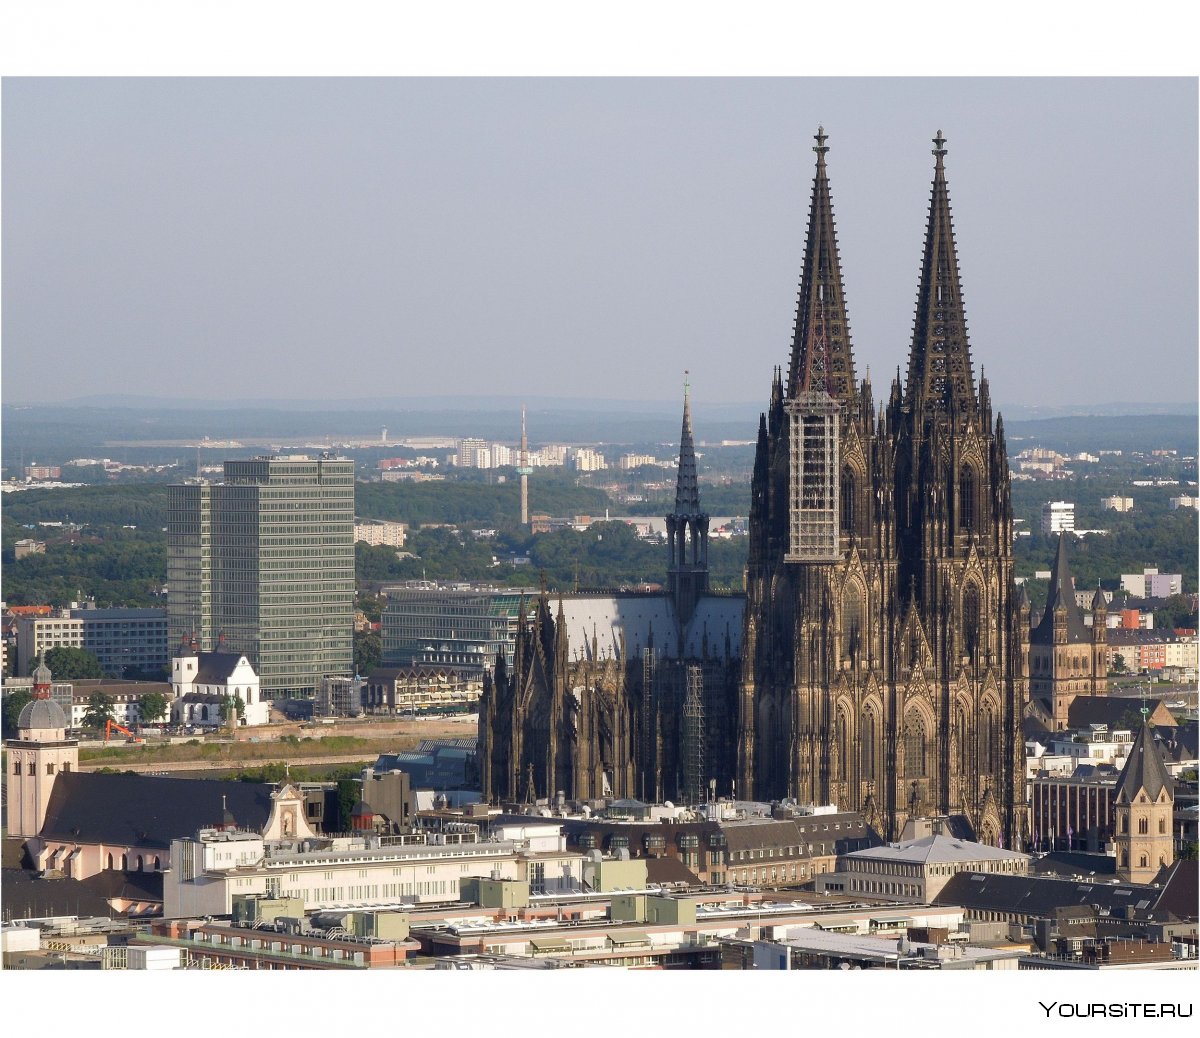 Достопримечательности Германии Кельнский собор